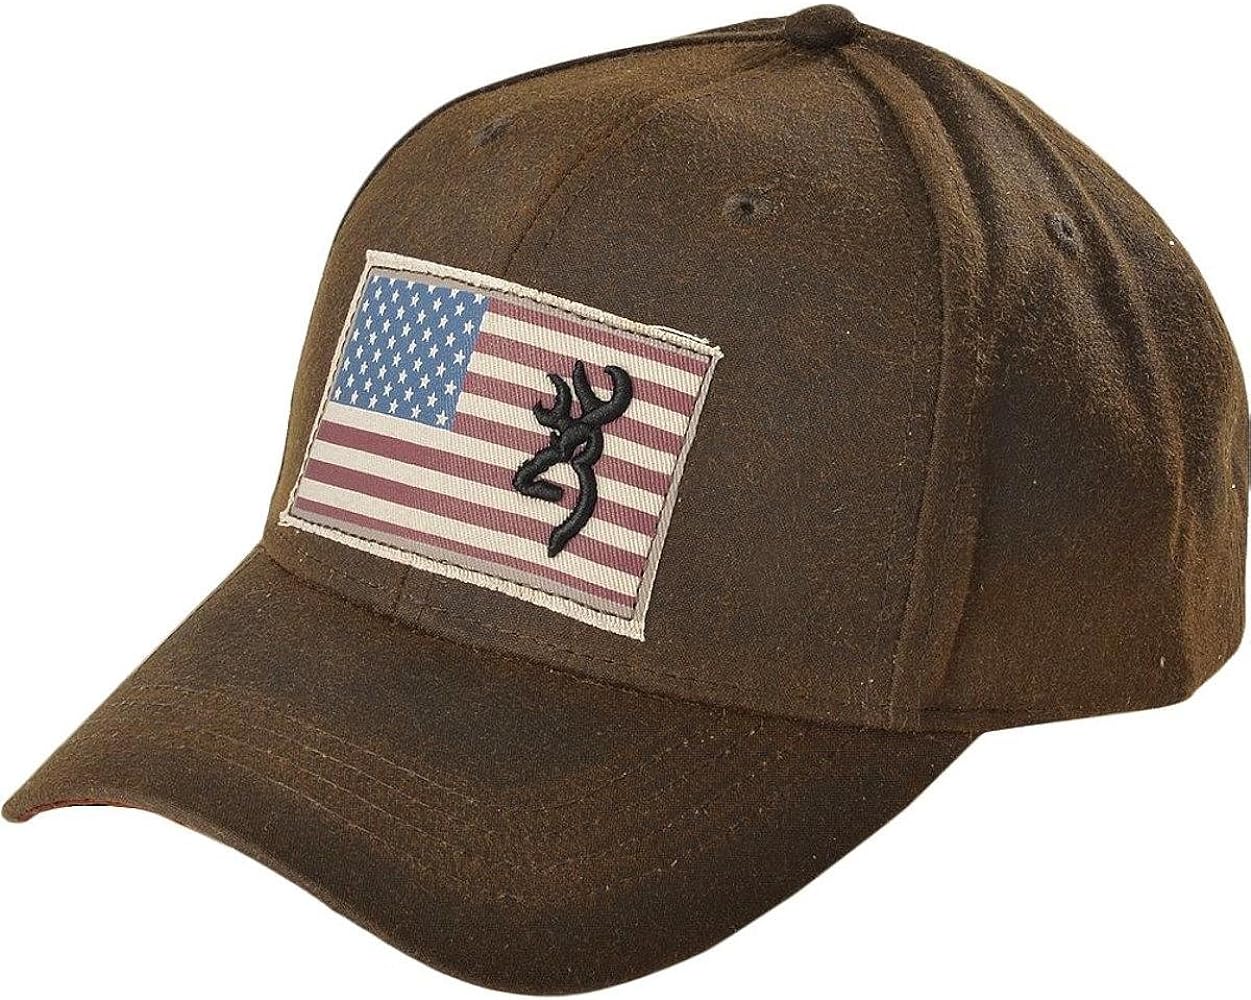 Browning Caps Liberty Wax